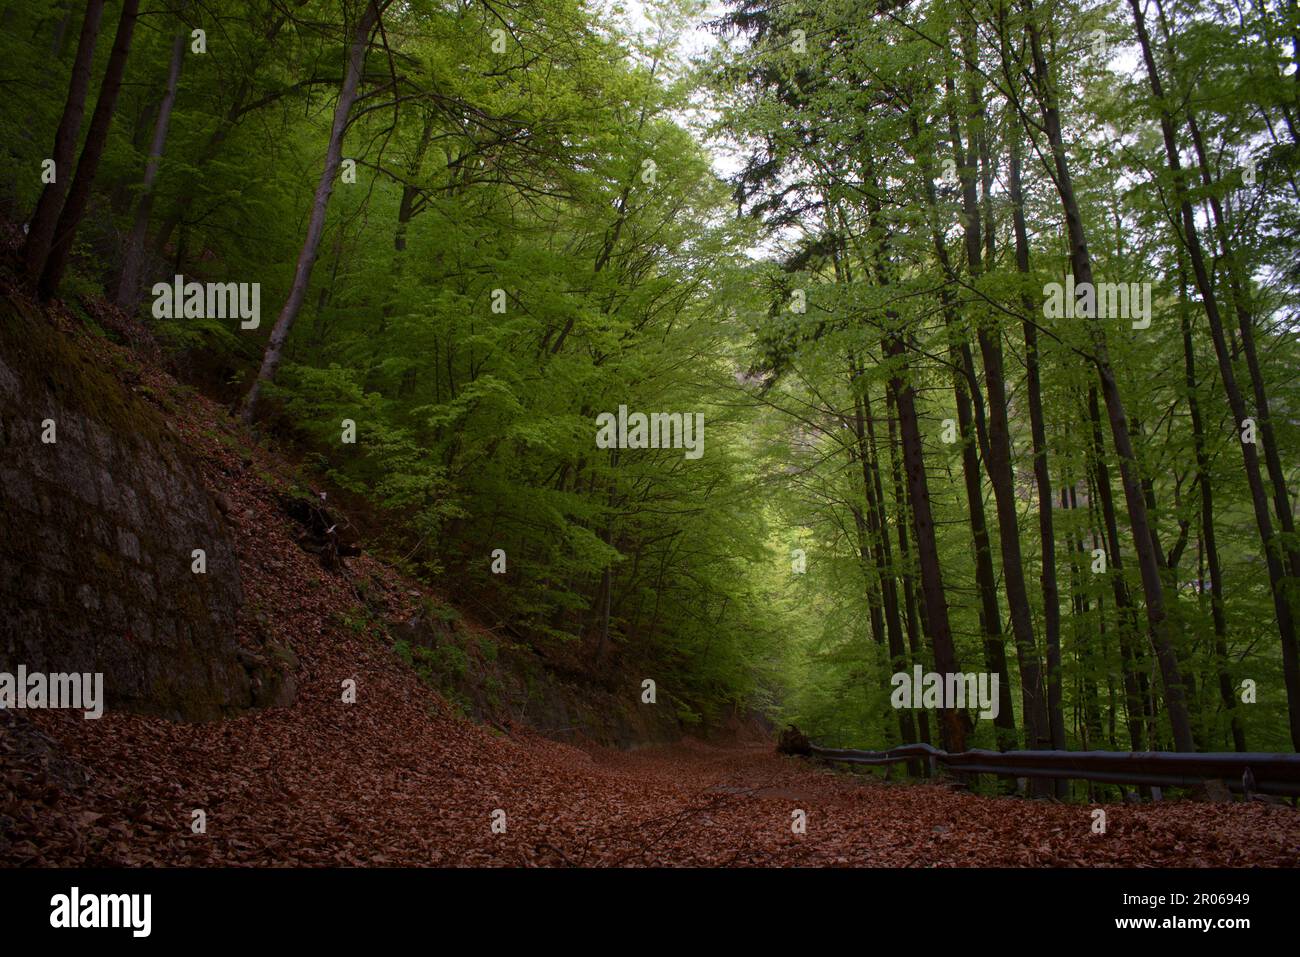 uno Splendido bosco di facci in montagna, con neoglie secche a Terra, Splendida foresta nelle dolomiti Stockfoto